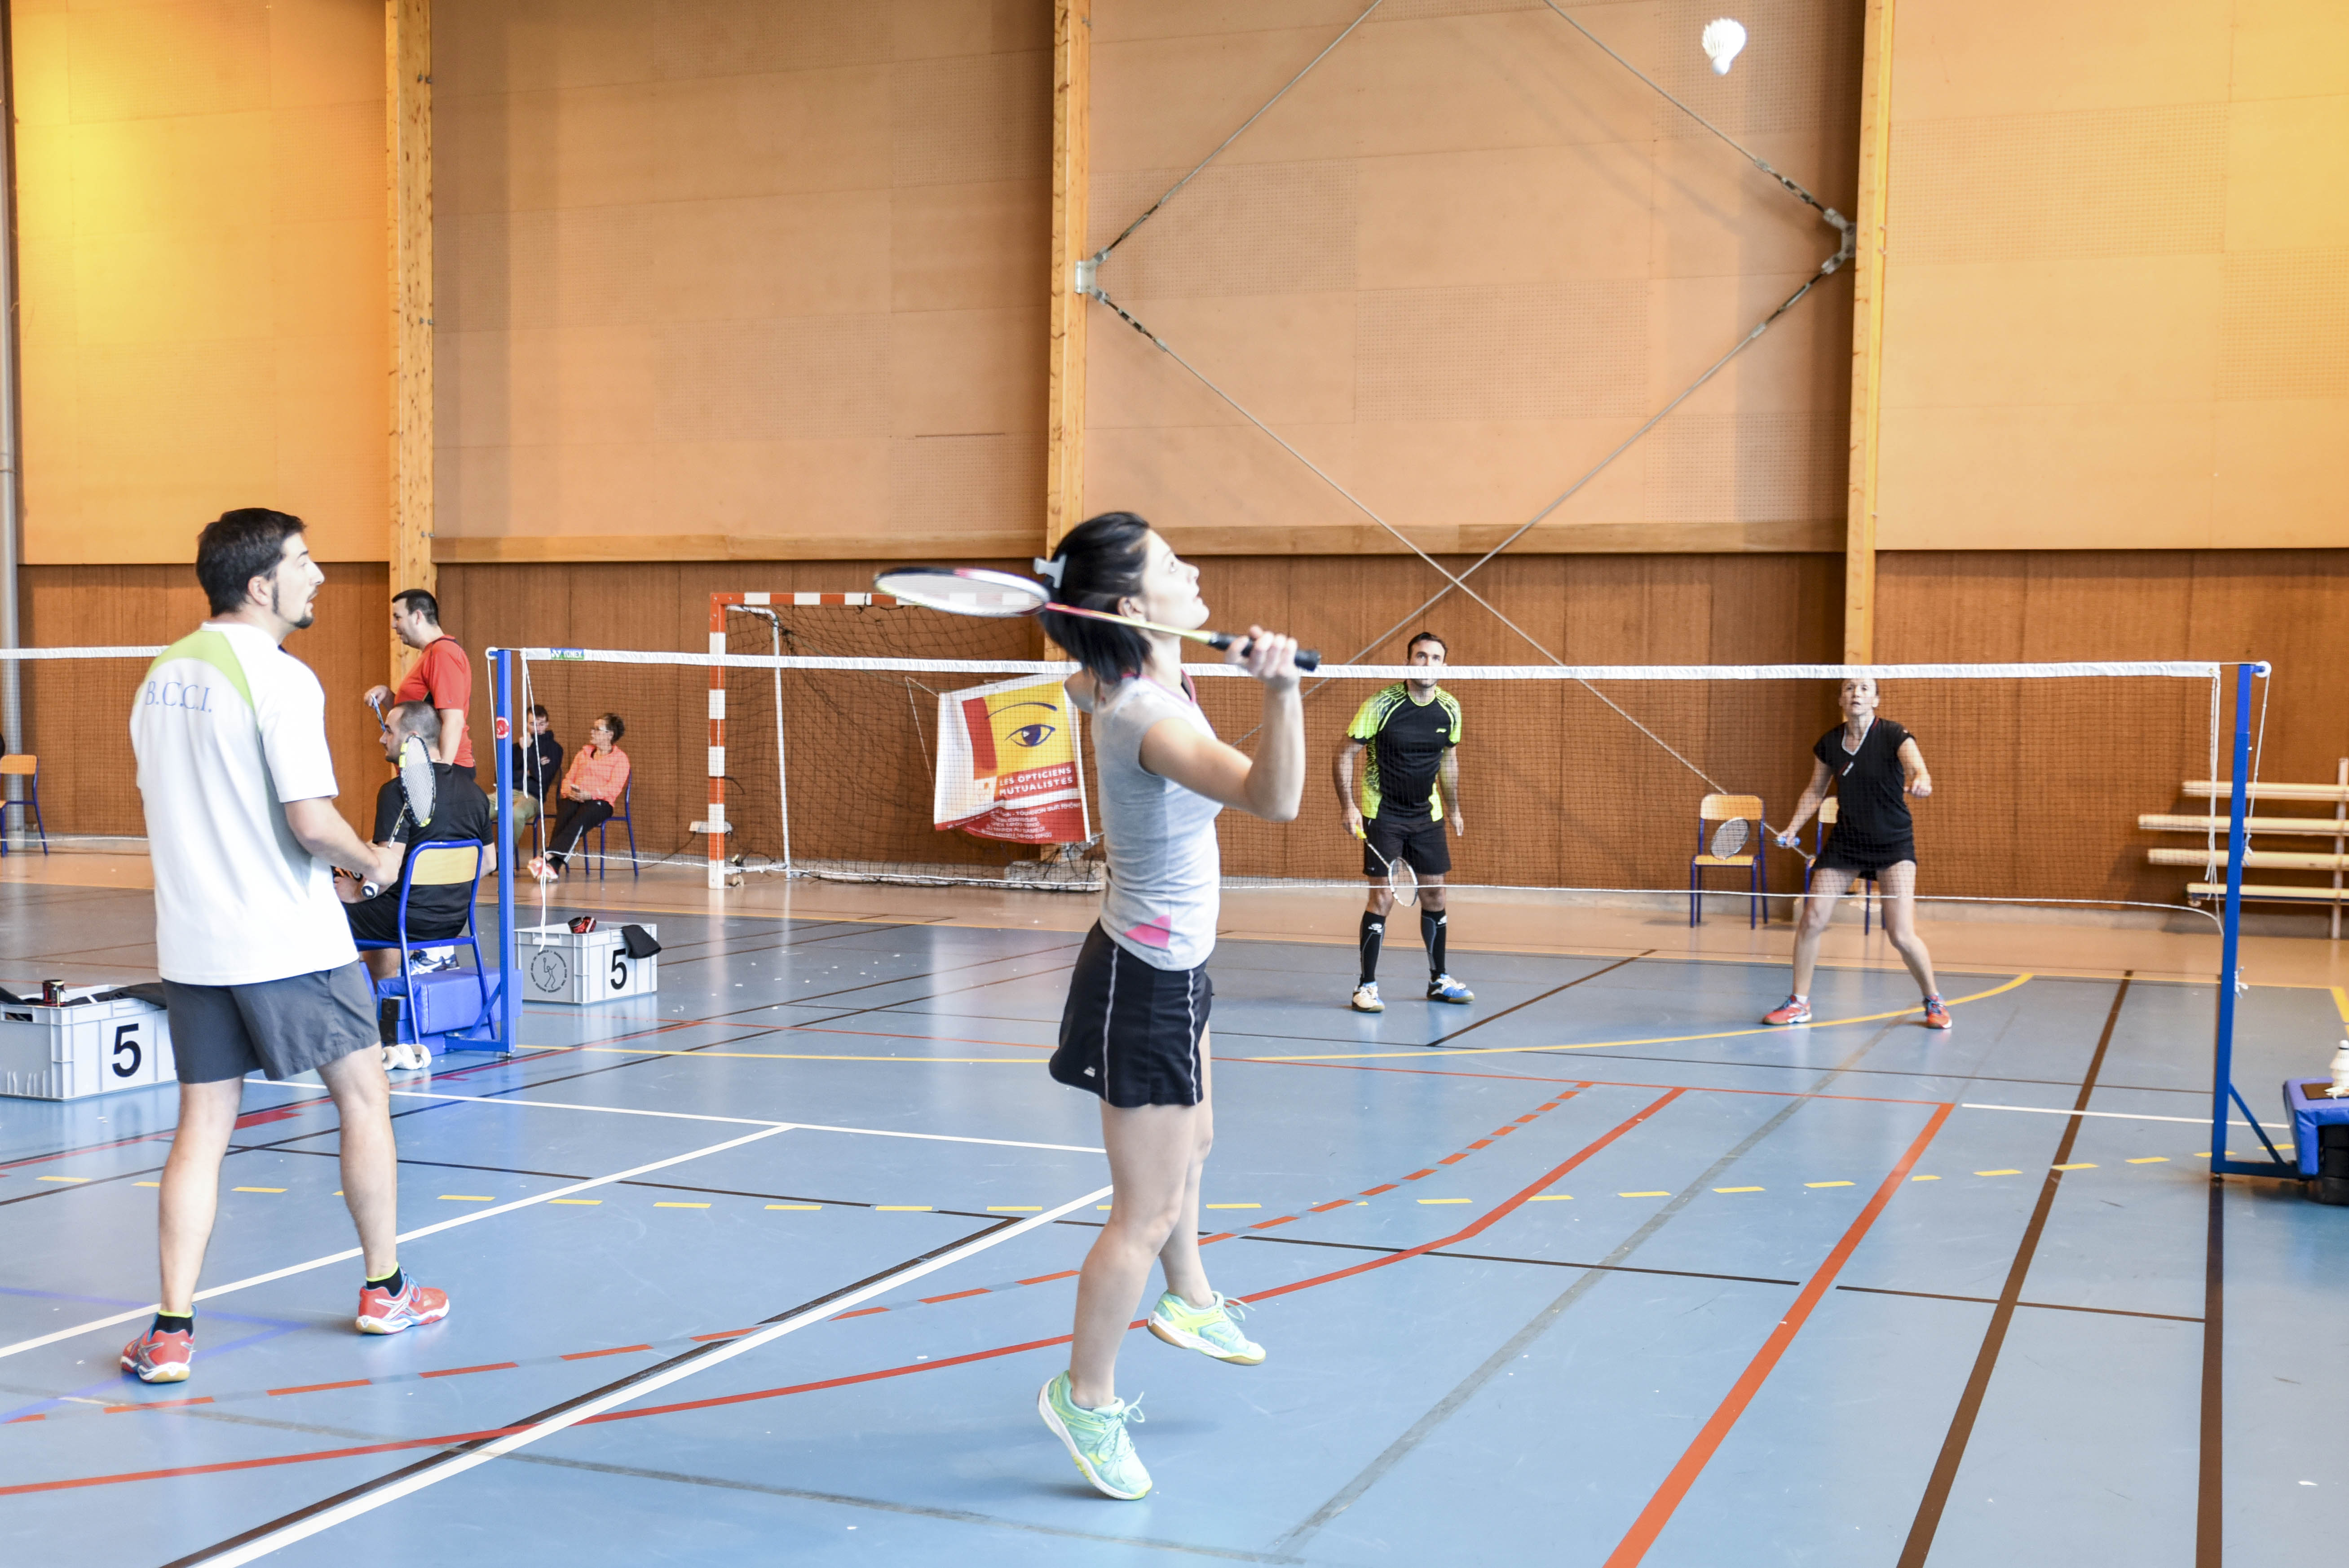 2017 12 03 - Tournoi de badminton Tournon-53